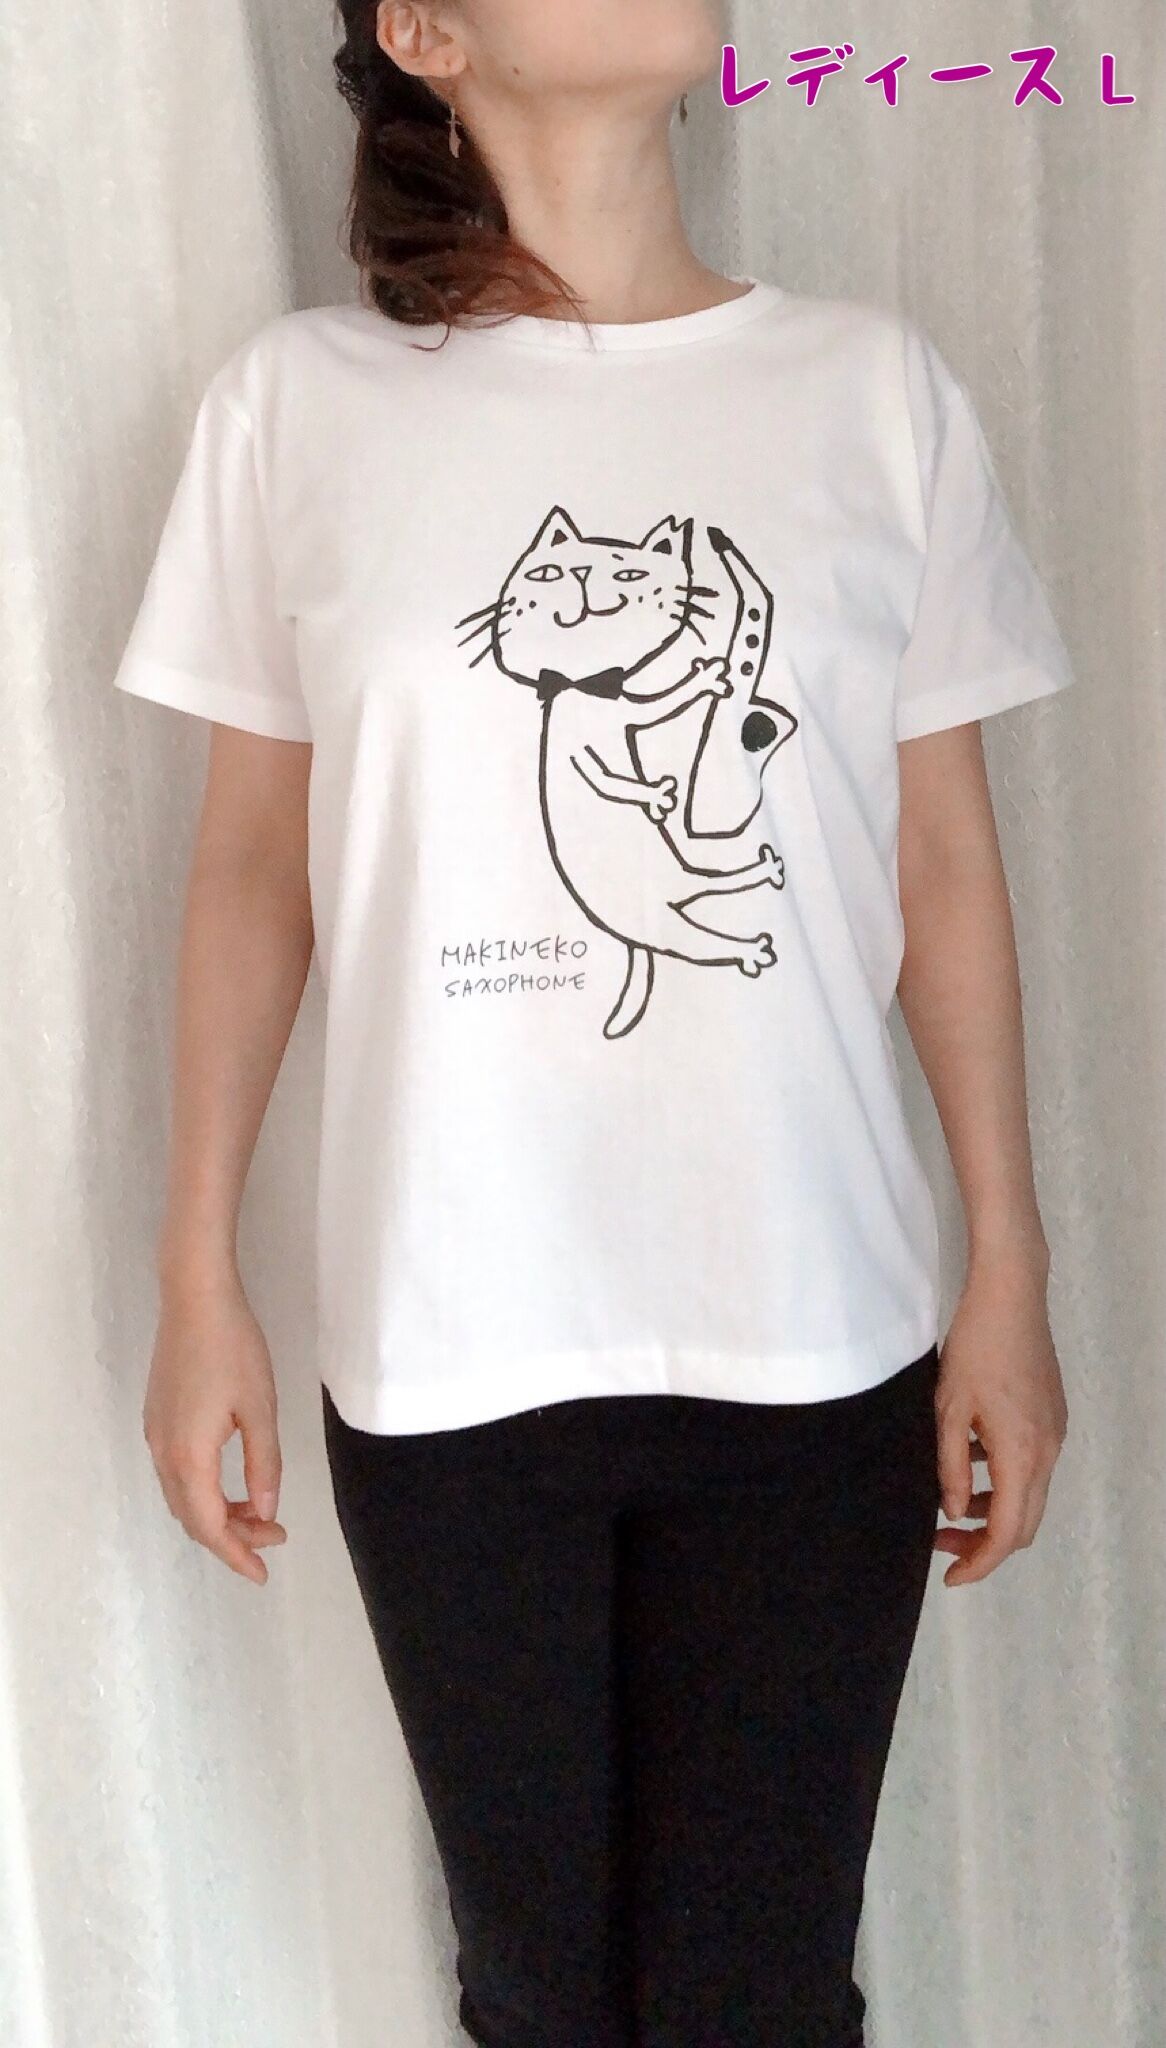 SAD VACATION 猫 Tシャツ グレー XXXL サイズ 新品 グッズ